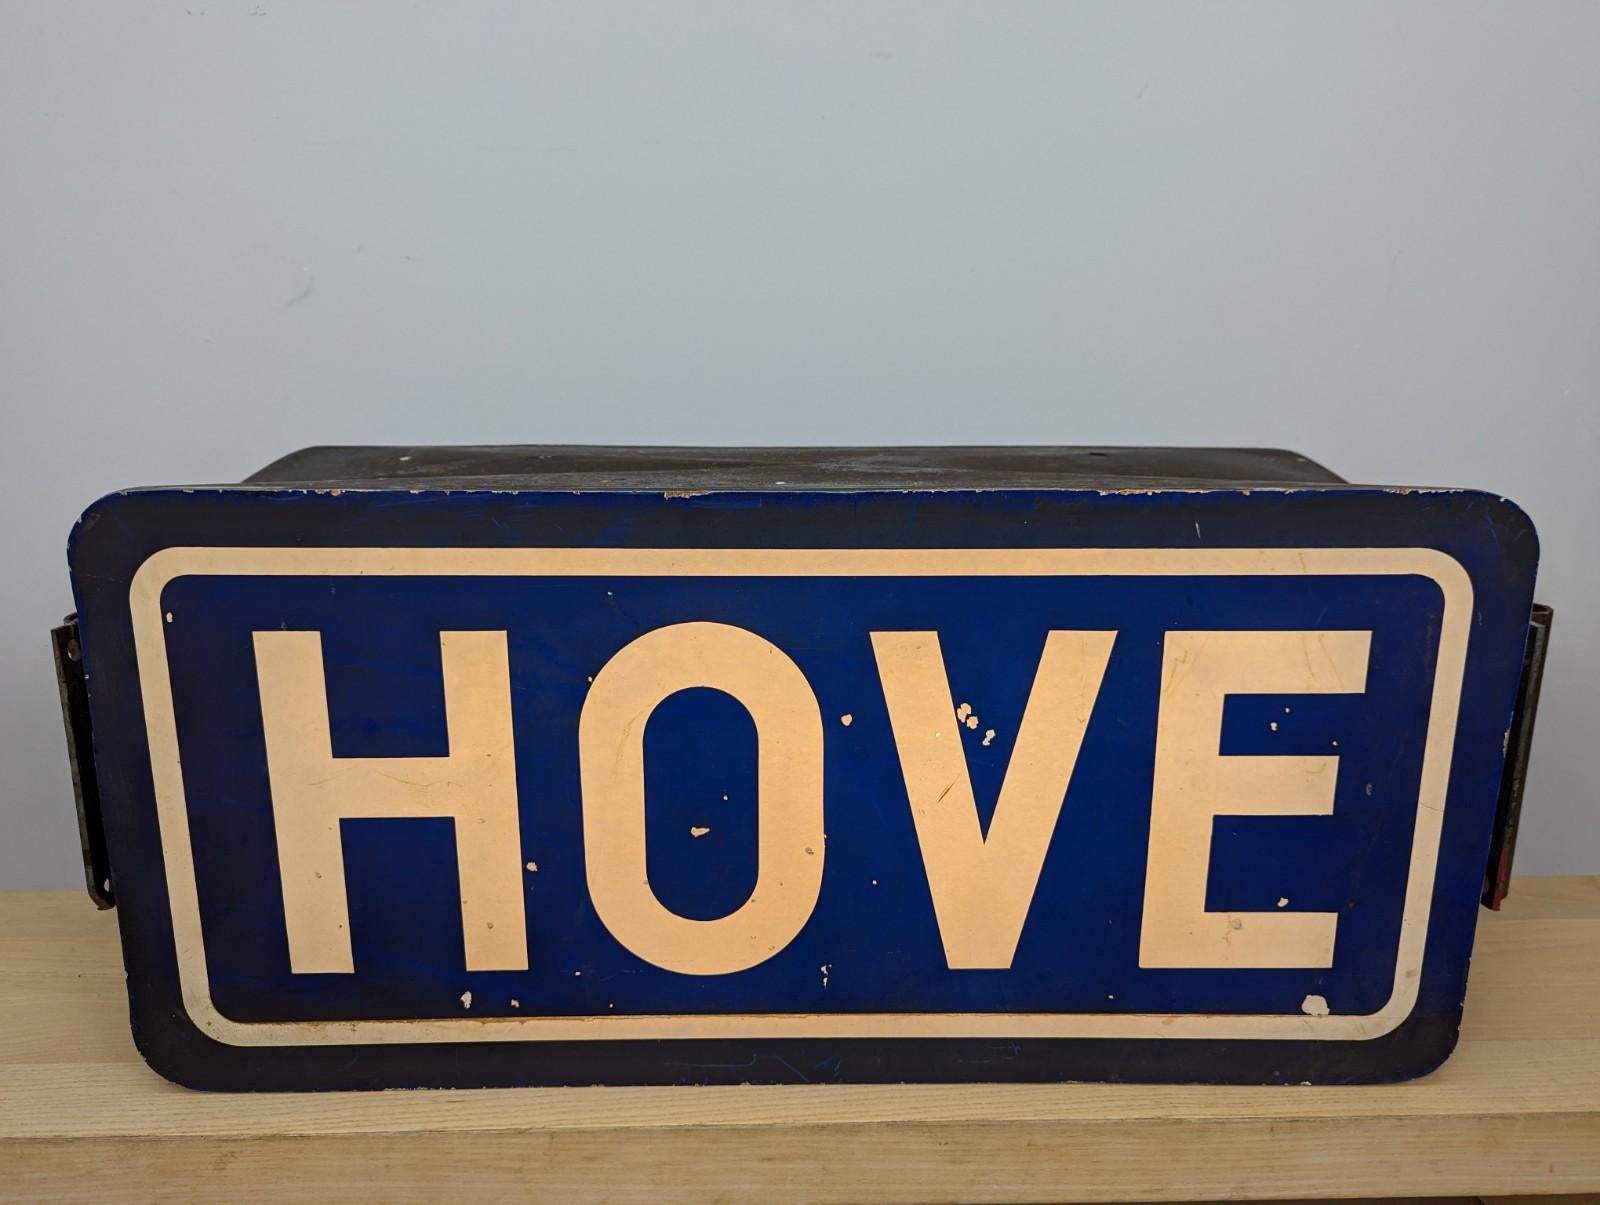 Großer Werbeleuchtkasten 'Hove' aus der Mitte des Jahrhunderts.

Die Box ist aus Fiberglas gefertigt und enthält eine moderne LED-Leuchte.

Der Artikel hat eine tolle Patina